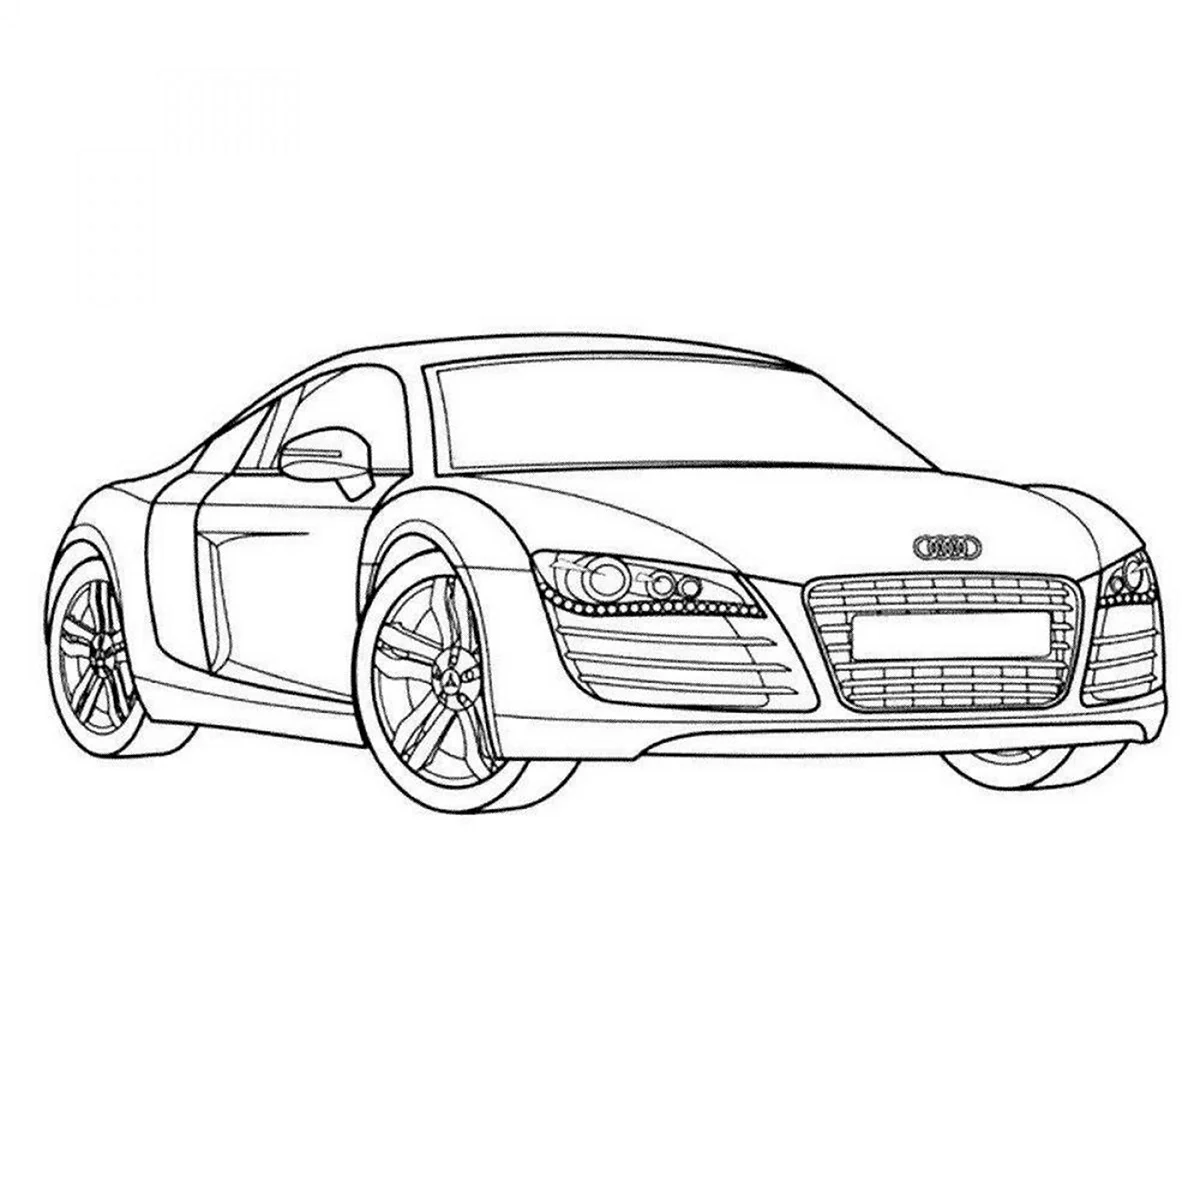 Машина Audi r8 раскраска. Картинка